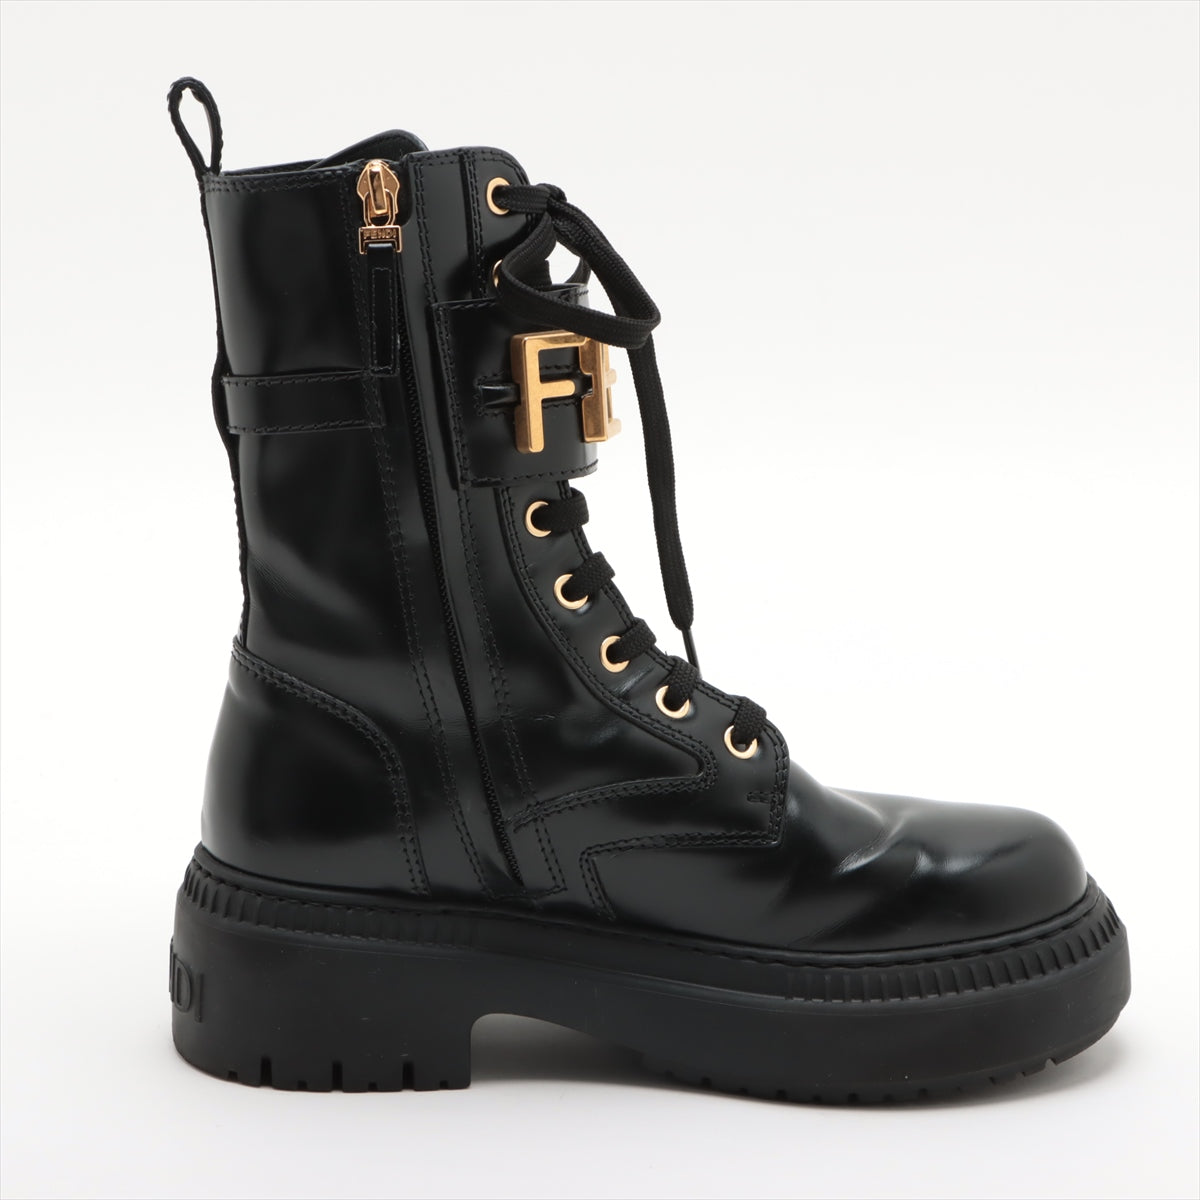 Fendi Leather Short Boots 36 Ladies' Black Logo Lace up zips